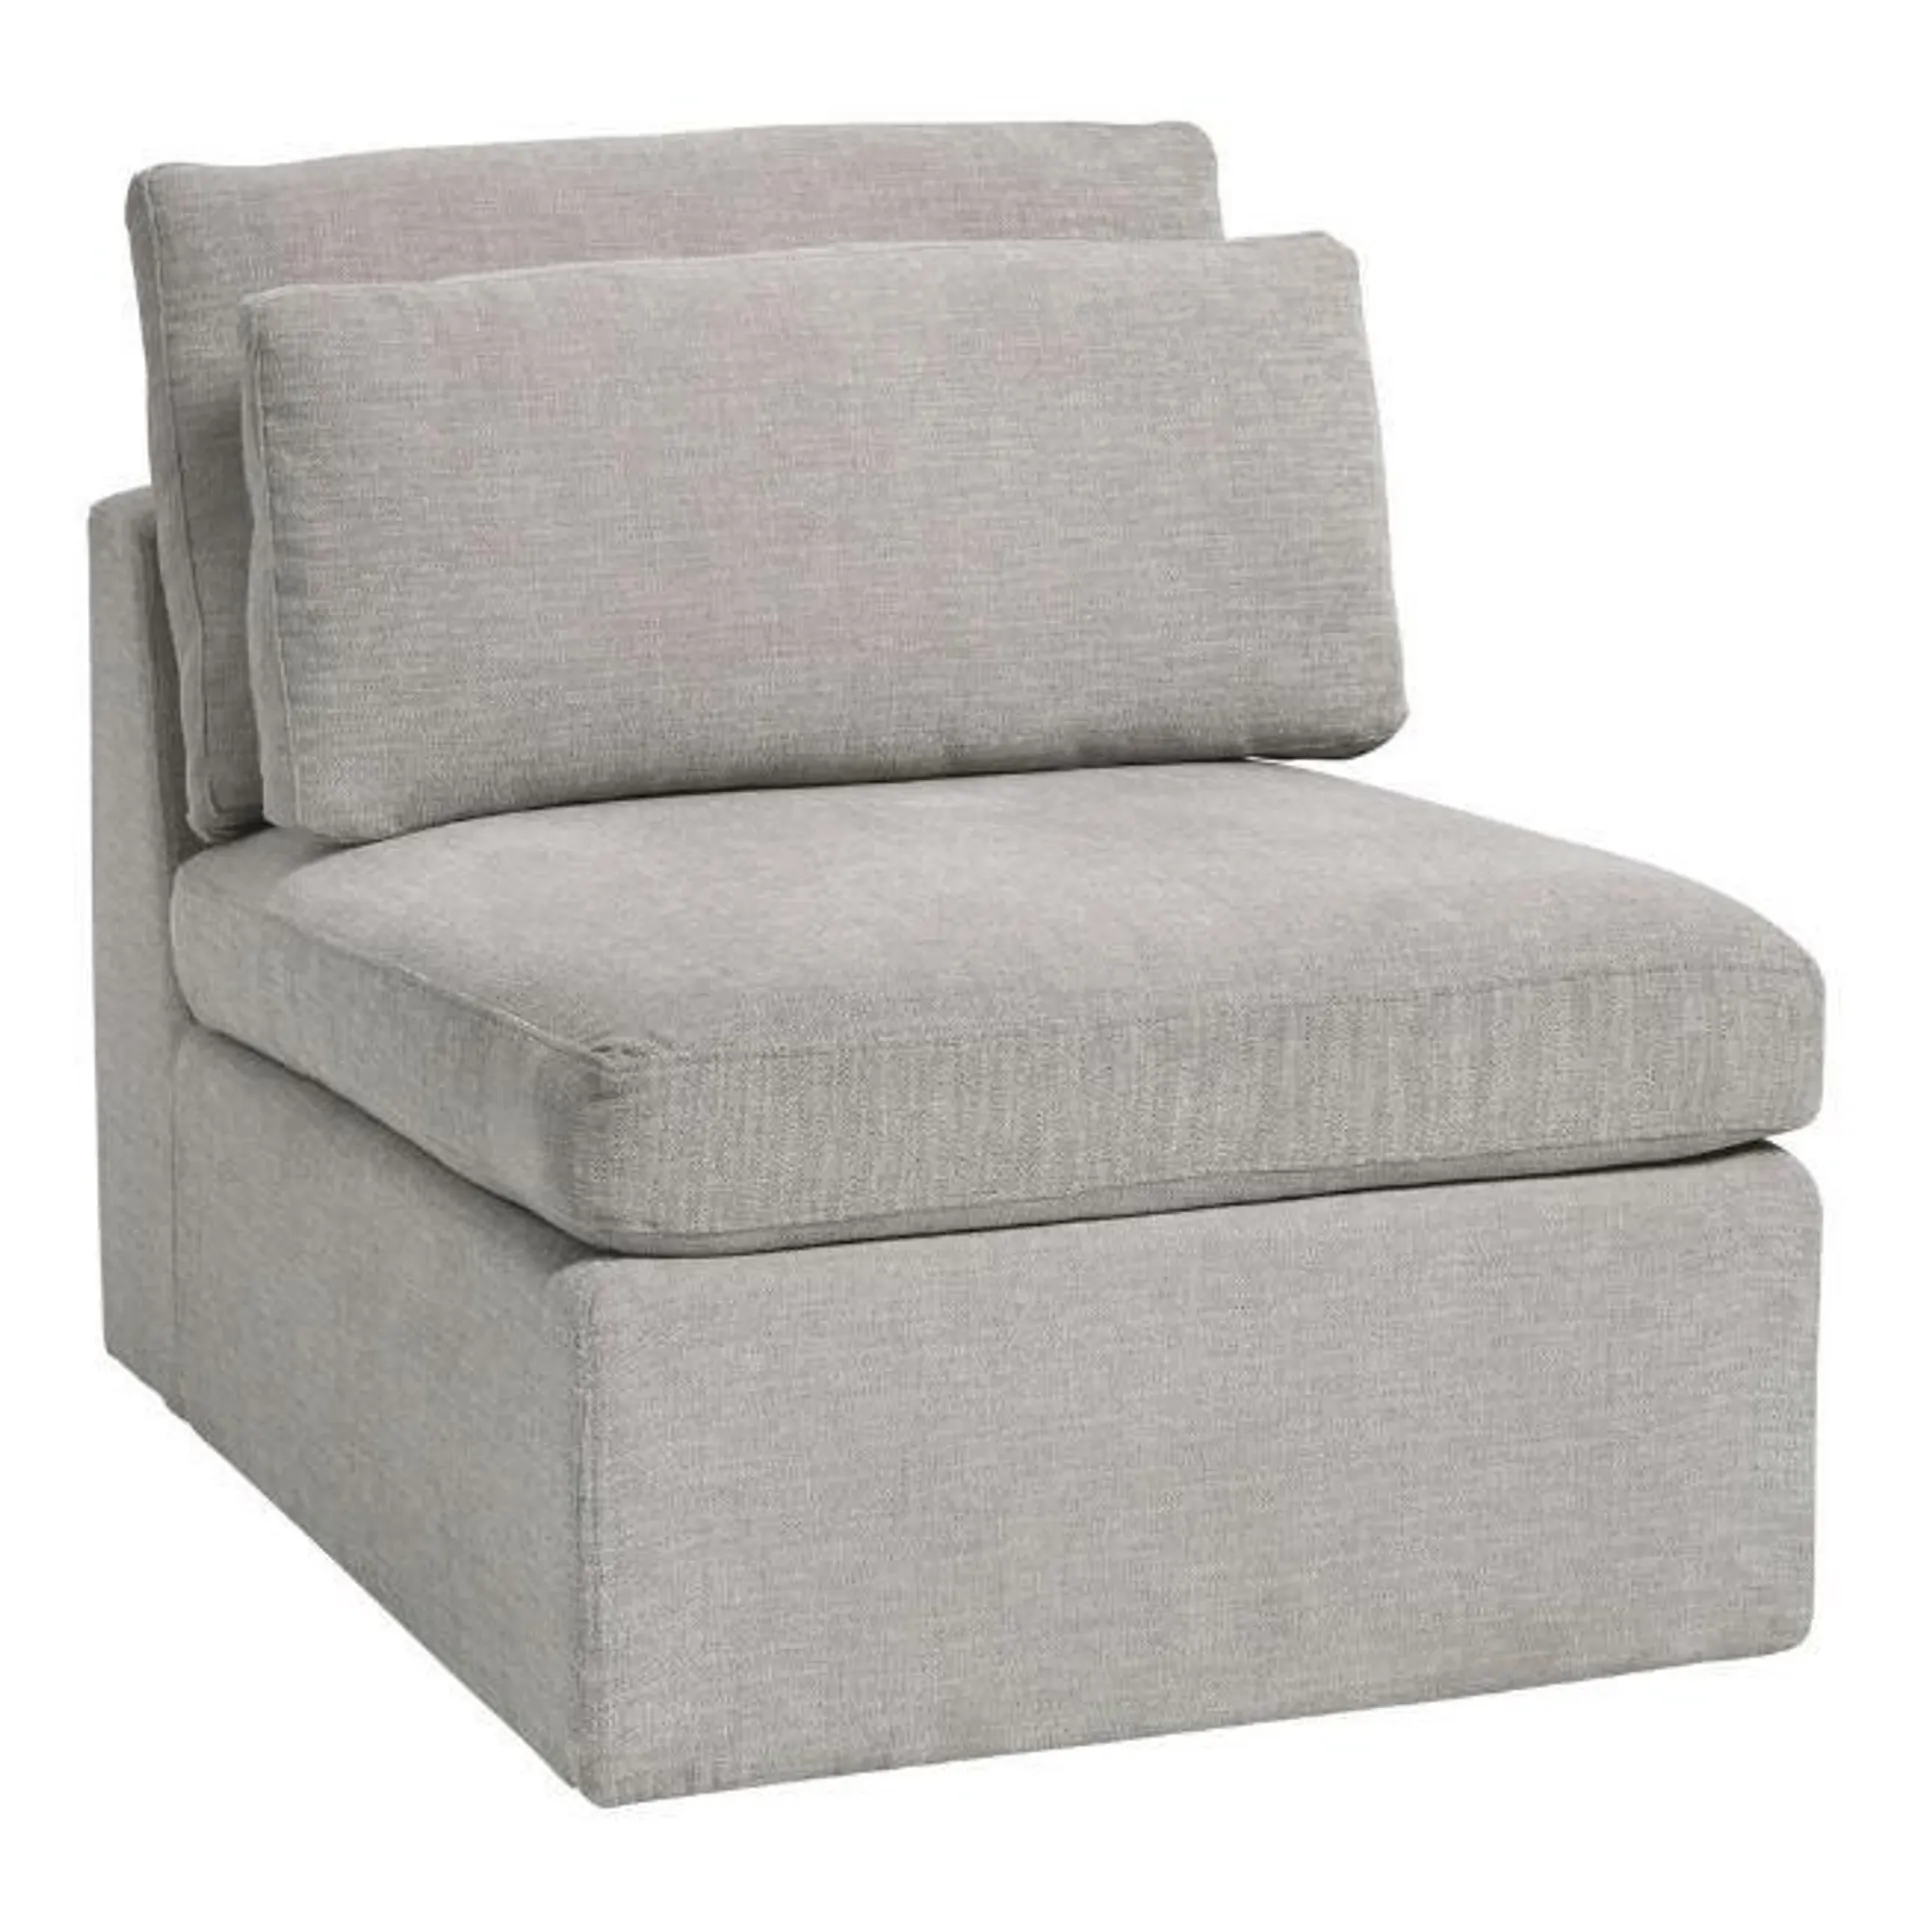 Emmett Gray Modular Sectional Armless Chair